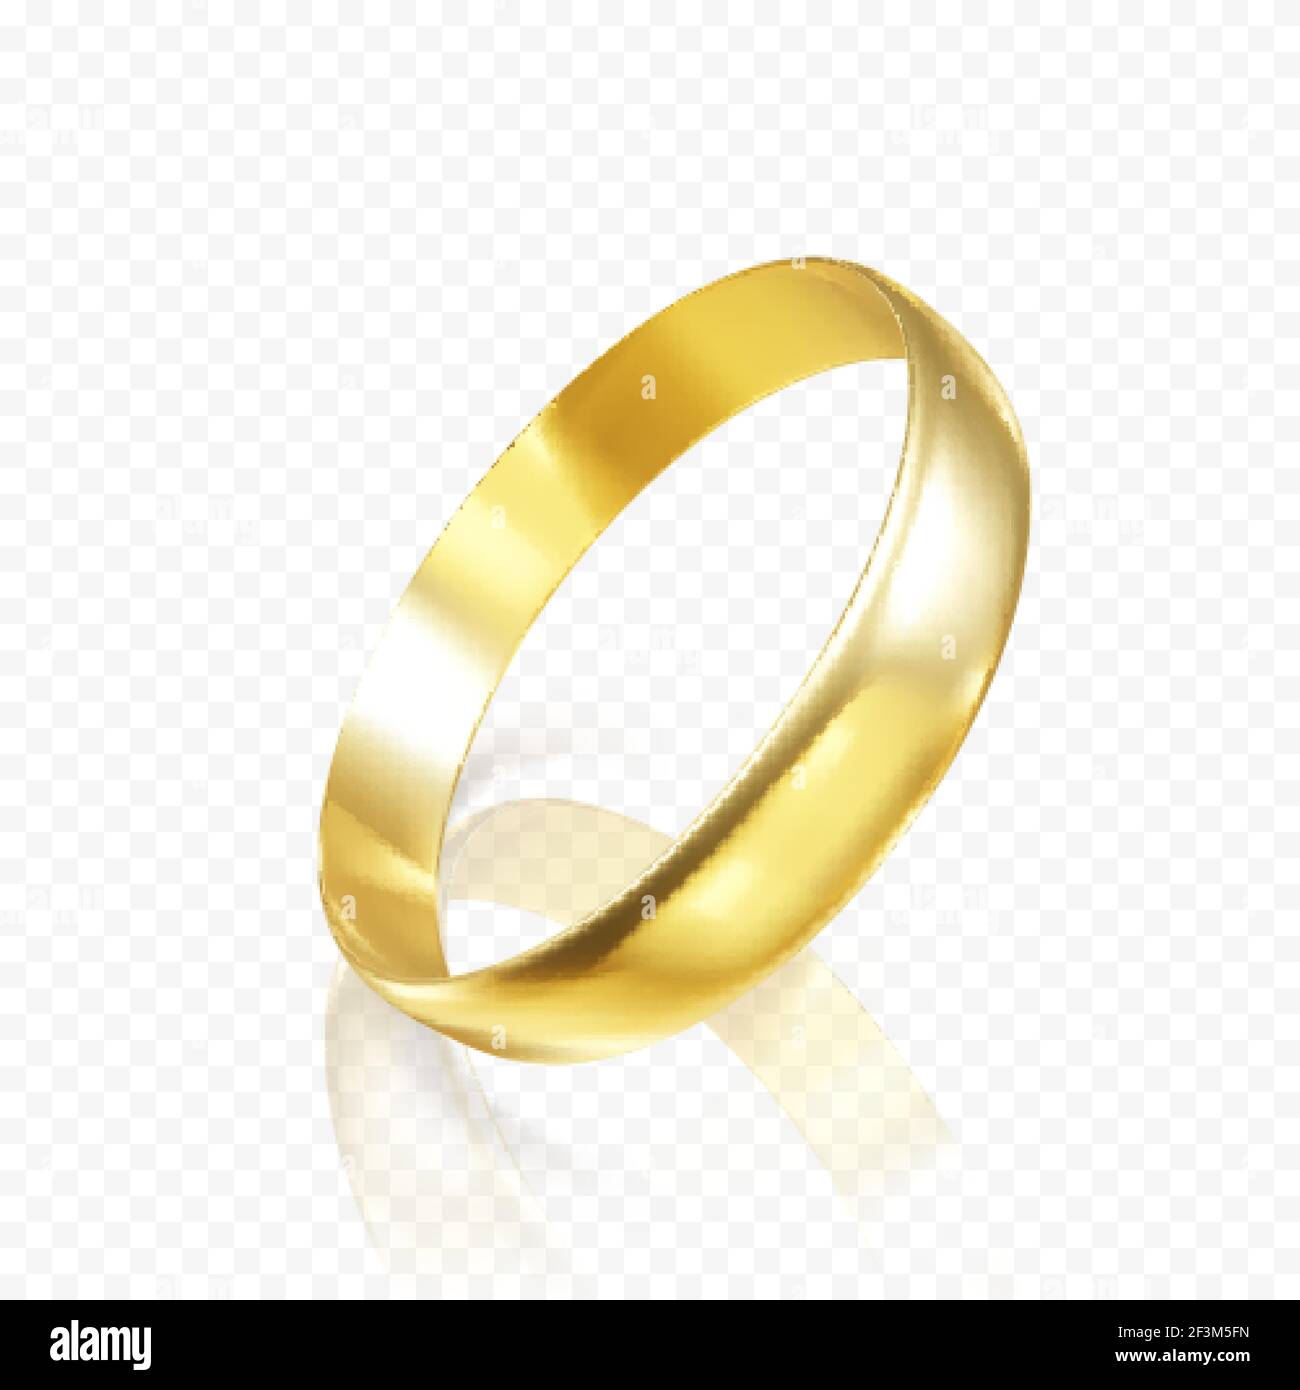 Anello di nozze d'oro realistico. Rendering 3D dell'anello d'oro con ombre e riflessi. Illustrazione vettoriale Illustrazione Vettoriale